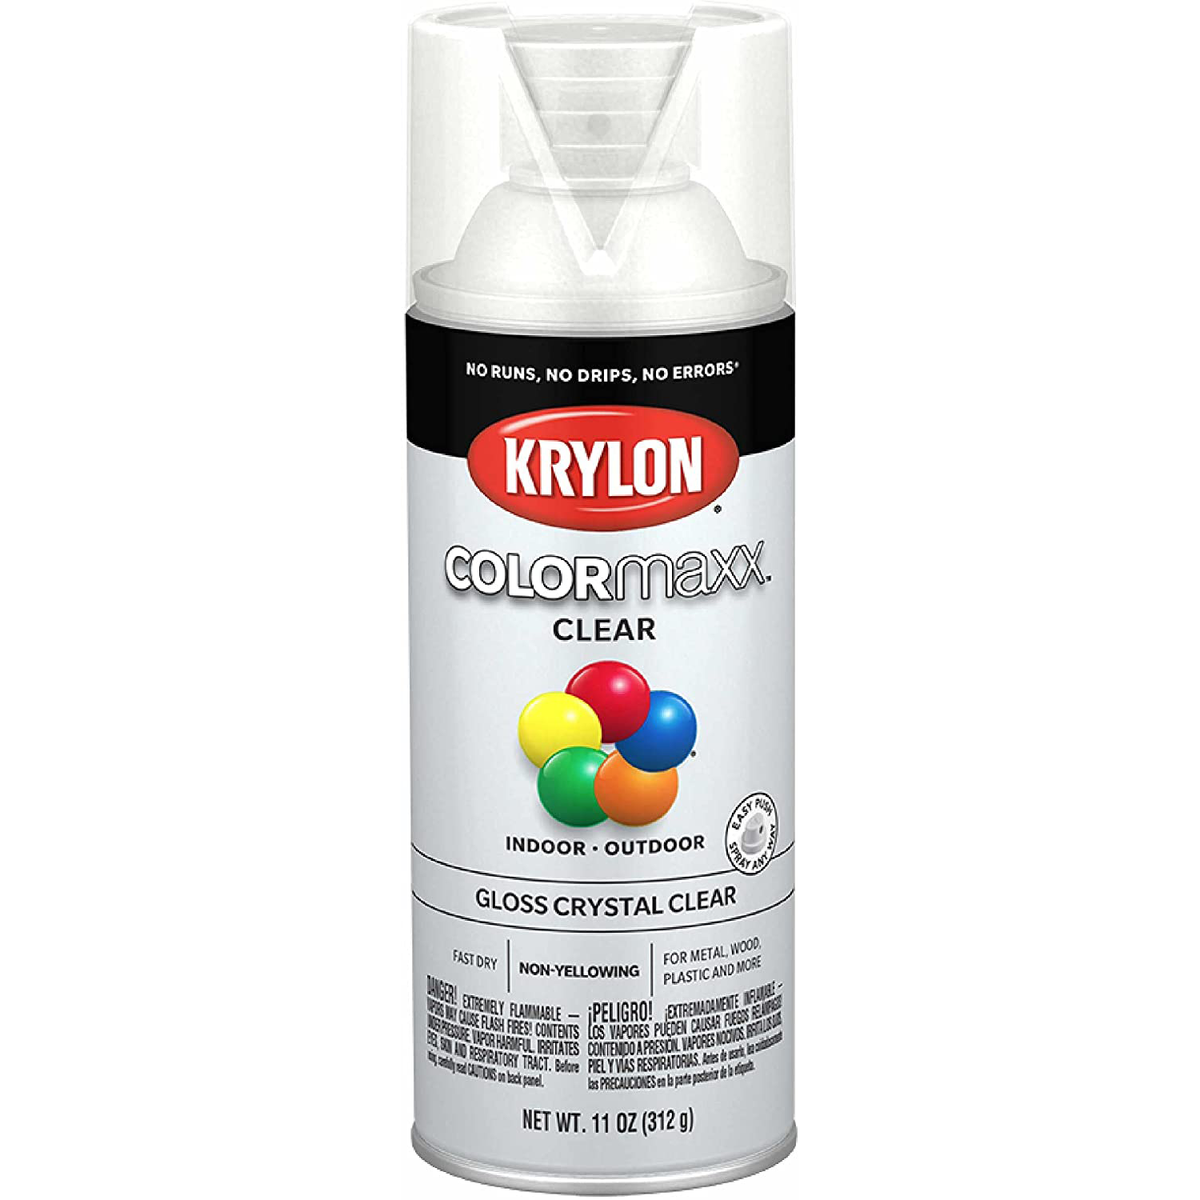 Krylon Spray Adhesive- All Purpose 7010-KRYLON SPRAY ADHESIV